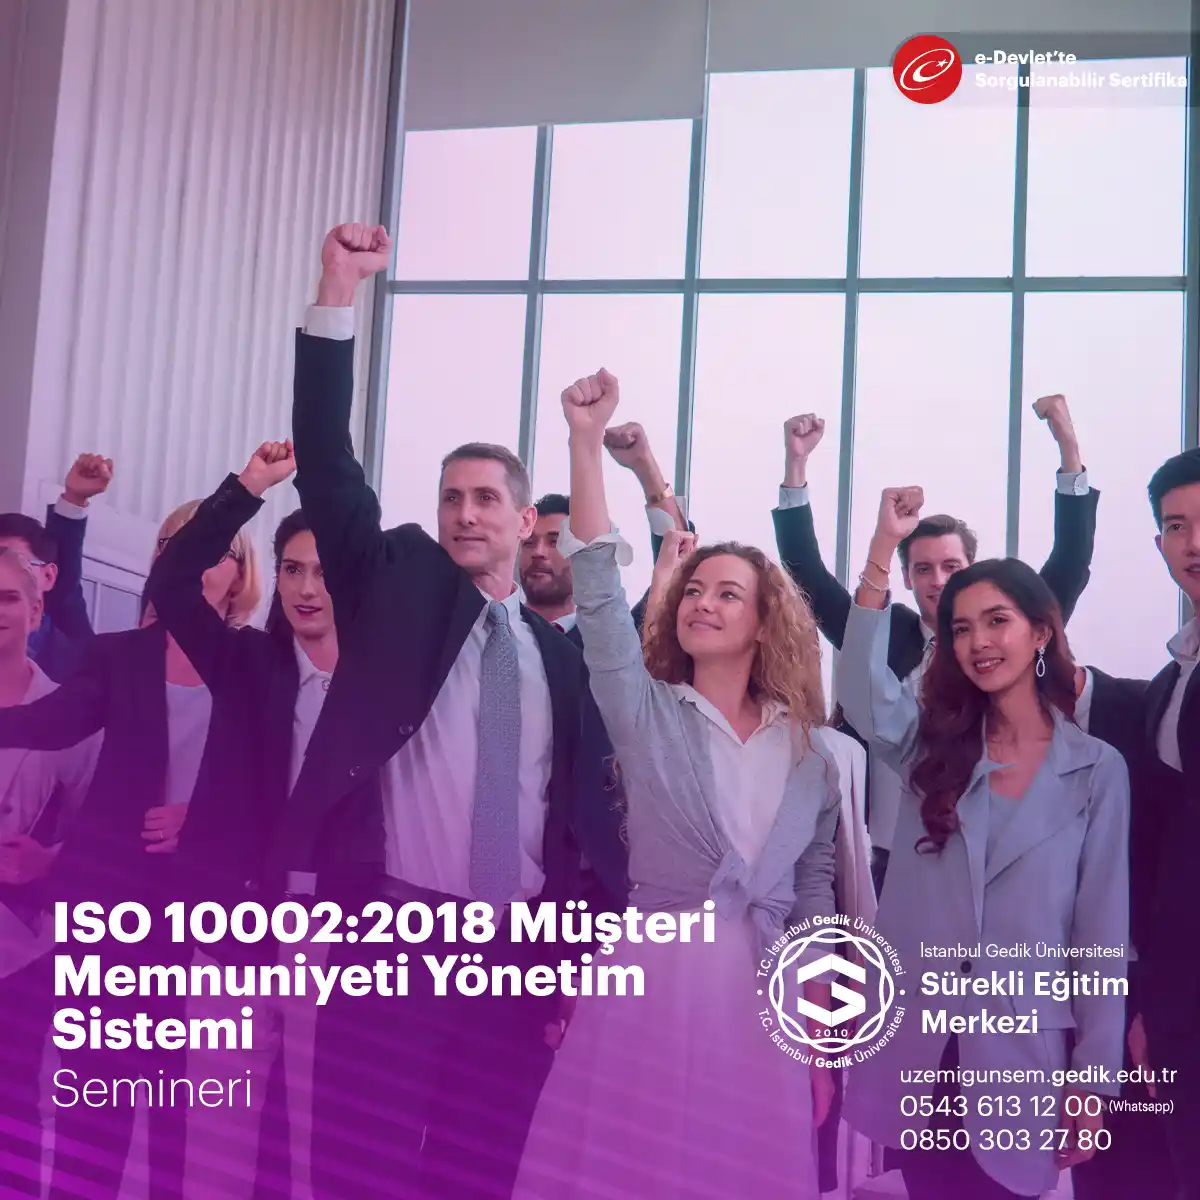 ISO 10002:2018 Müşteri Memnuniyeti Yönetim Sistemi semineri, kurumların müşteri memnuniyeti yönetim sistemi kurmalarına ve sürdürmelerine yardımcı olan bir seminerdir. Seminer, müşteri memnuniyeti yönetim sürecinin nasıl gerçekleştirileceği ve ISO 10002 standardının gereklilikleri hakkında katılımcılara bilgi verir.